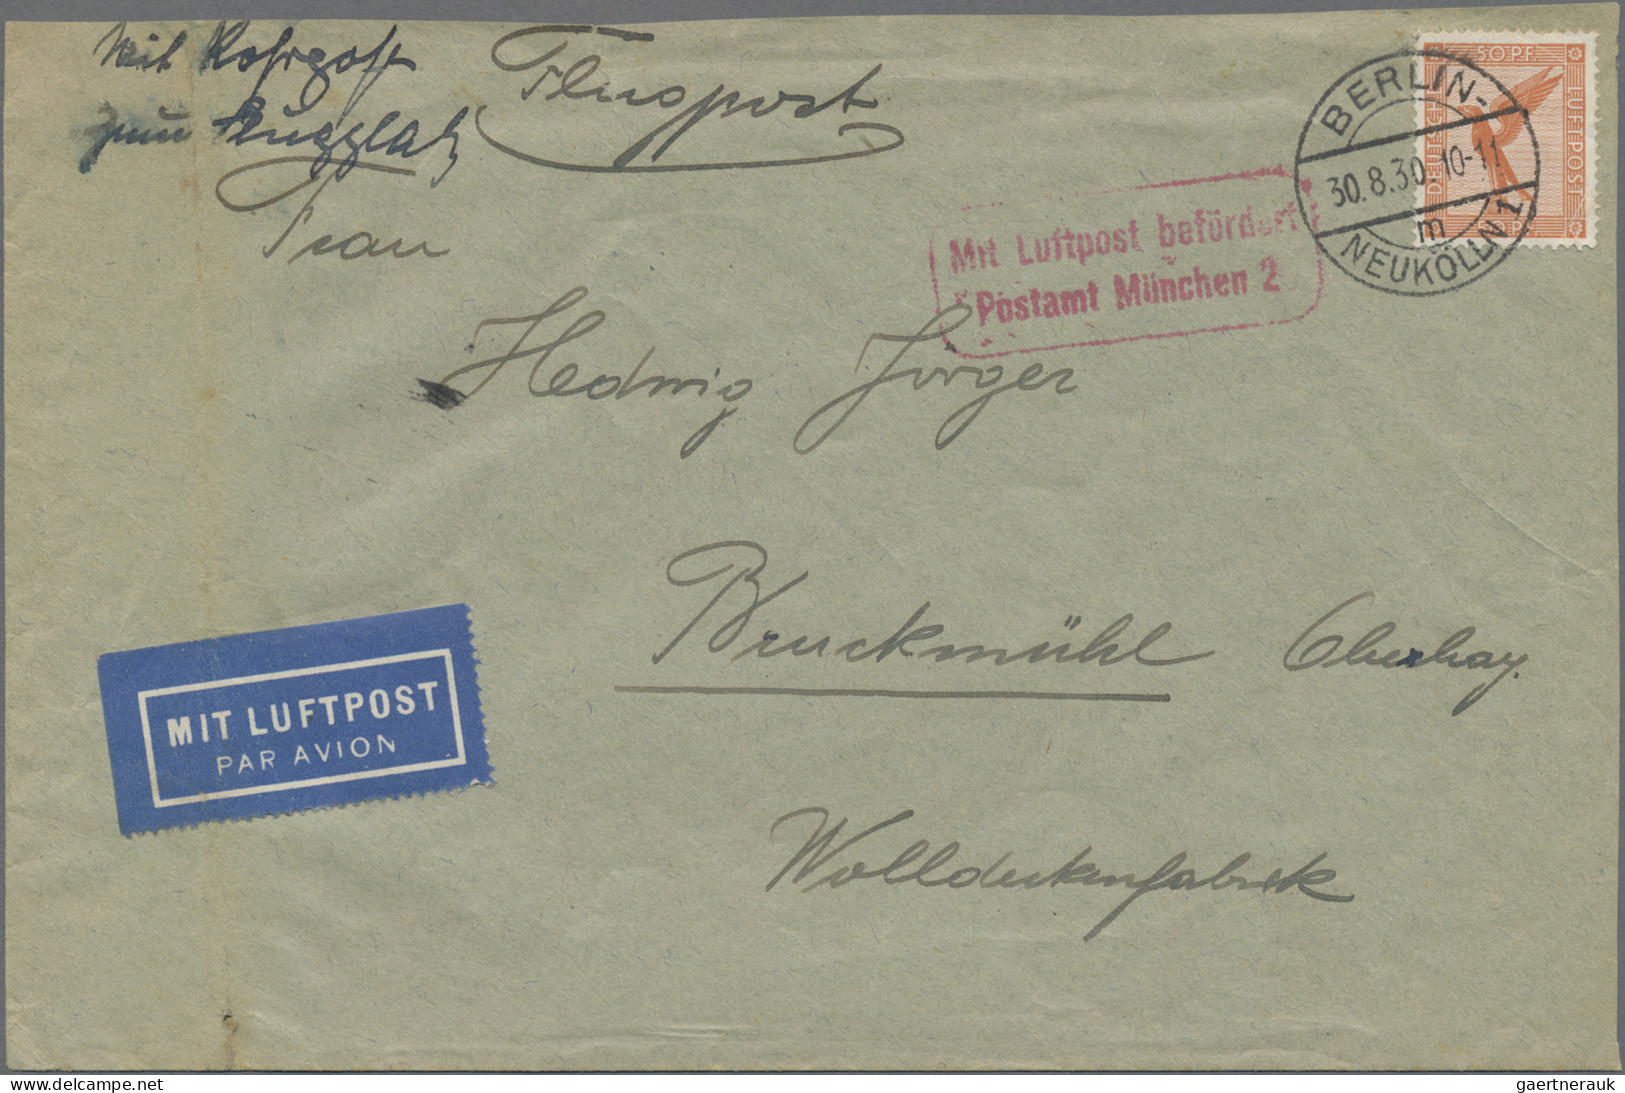 Air Mail - Germany: 1921/1934, saubere Partie von 16 Flugpost-Belegen Dt.Reich d